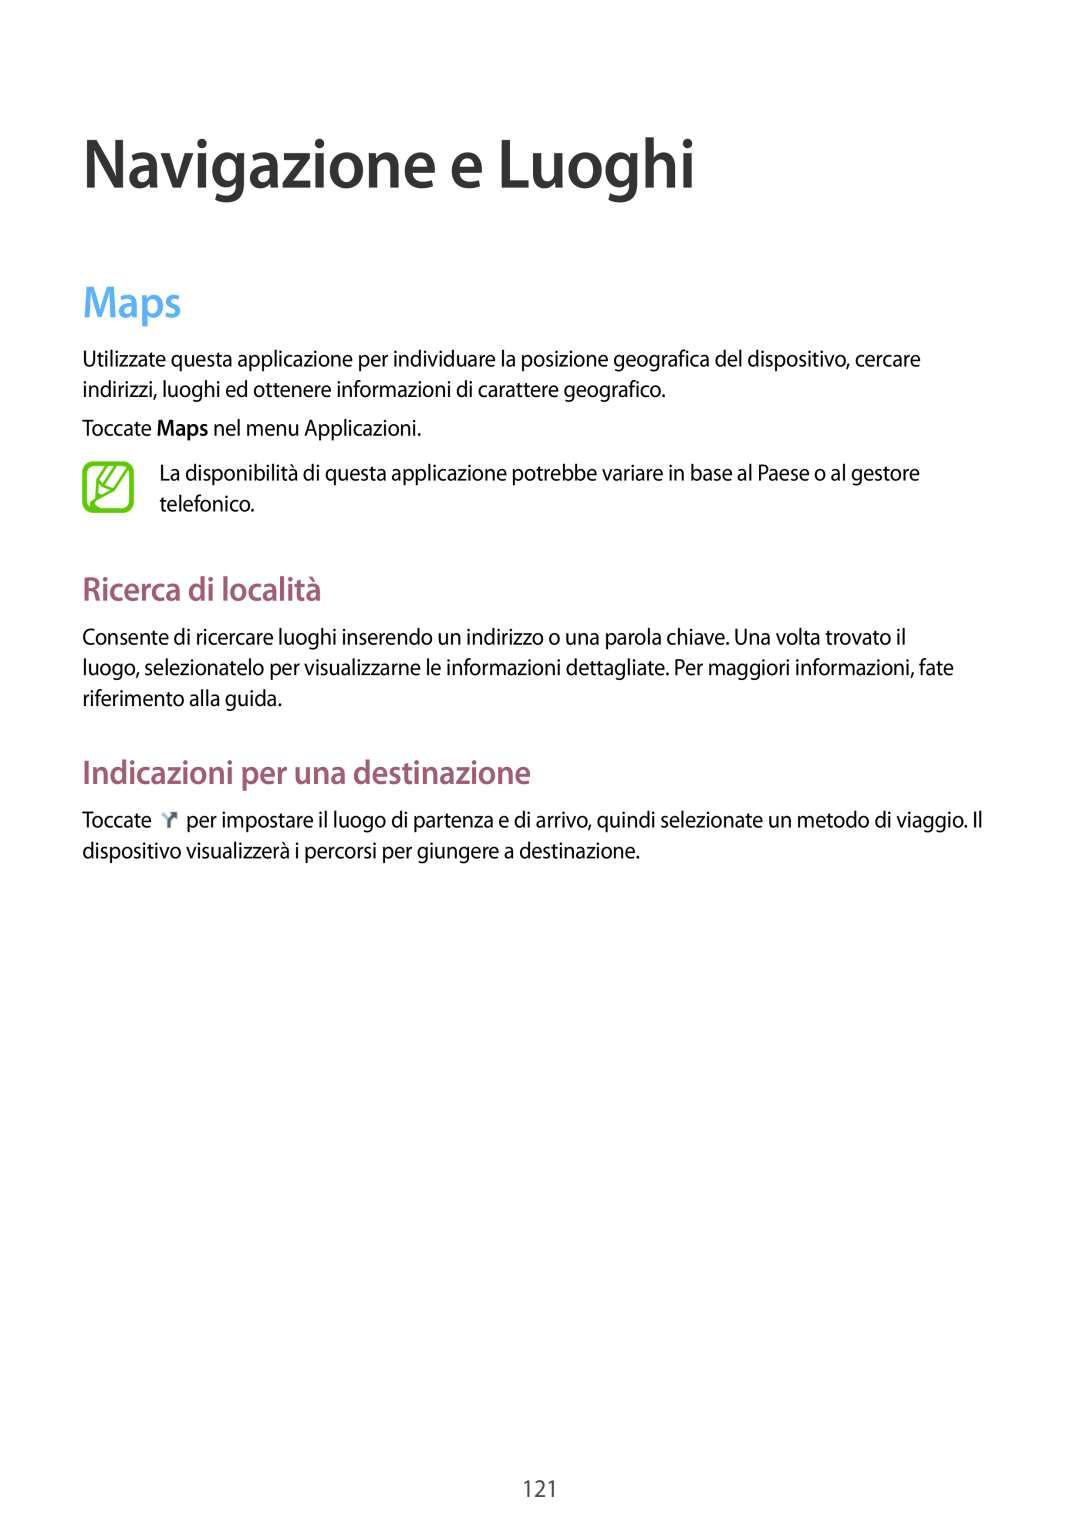 Samsung GT-I9515ZWATIM, GT-I9515ZSADBT Navigazione e Luoghi, Maps, Ricerca di località, Indicazioni per una destinazione 